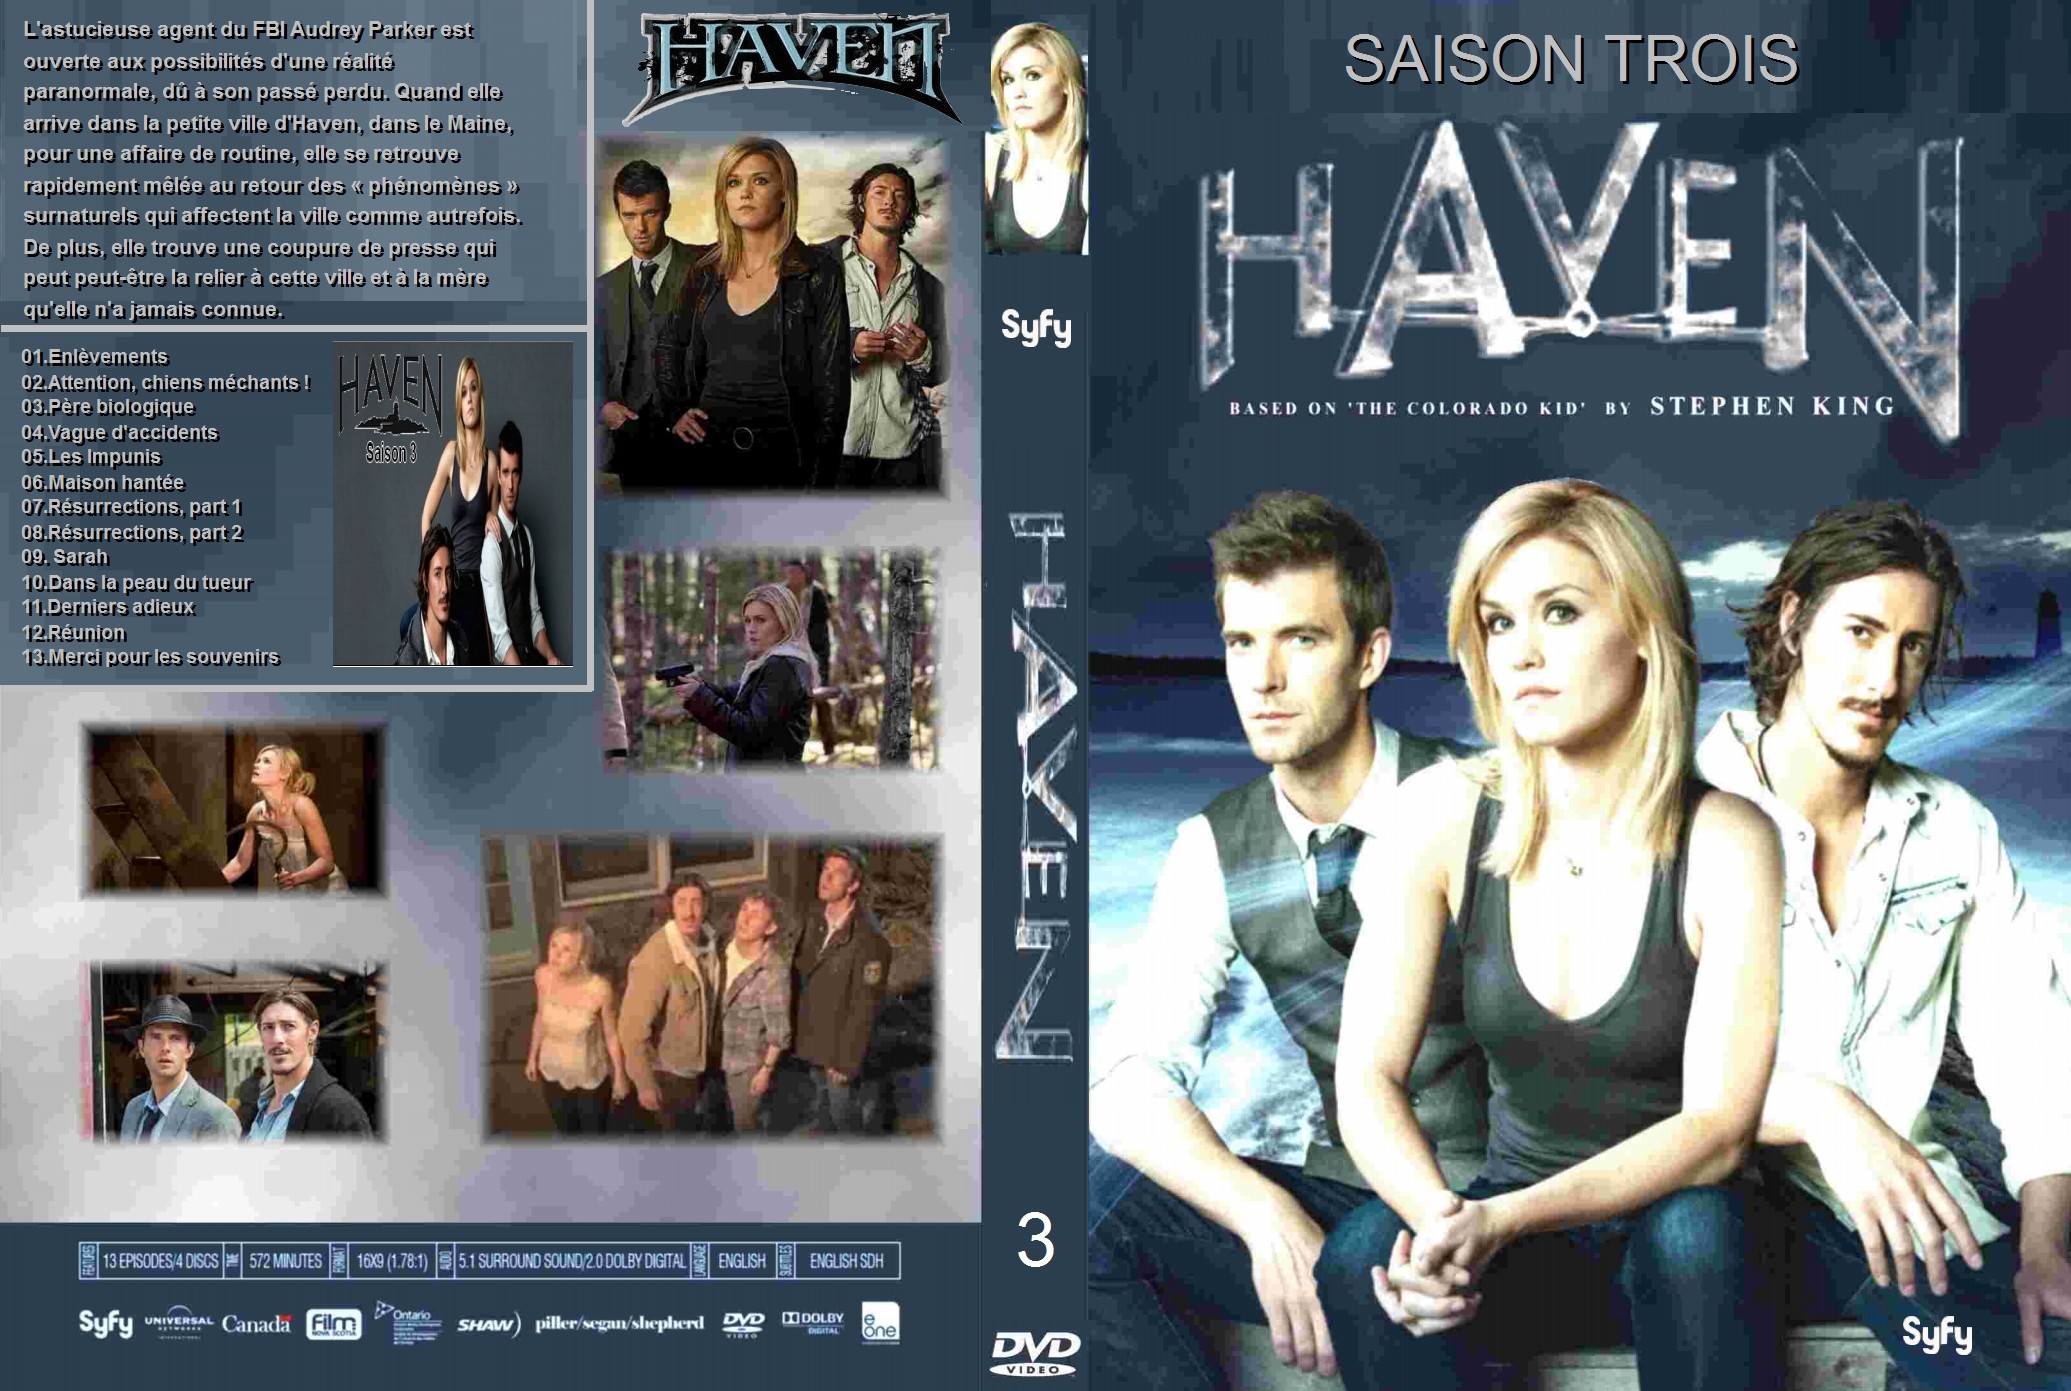 Jaquette DVD Haven saison 3 custom